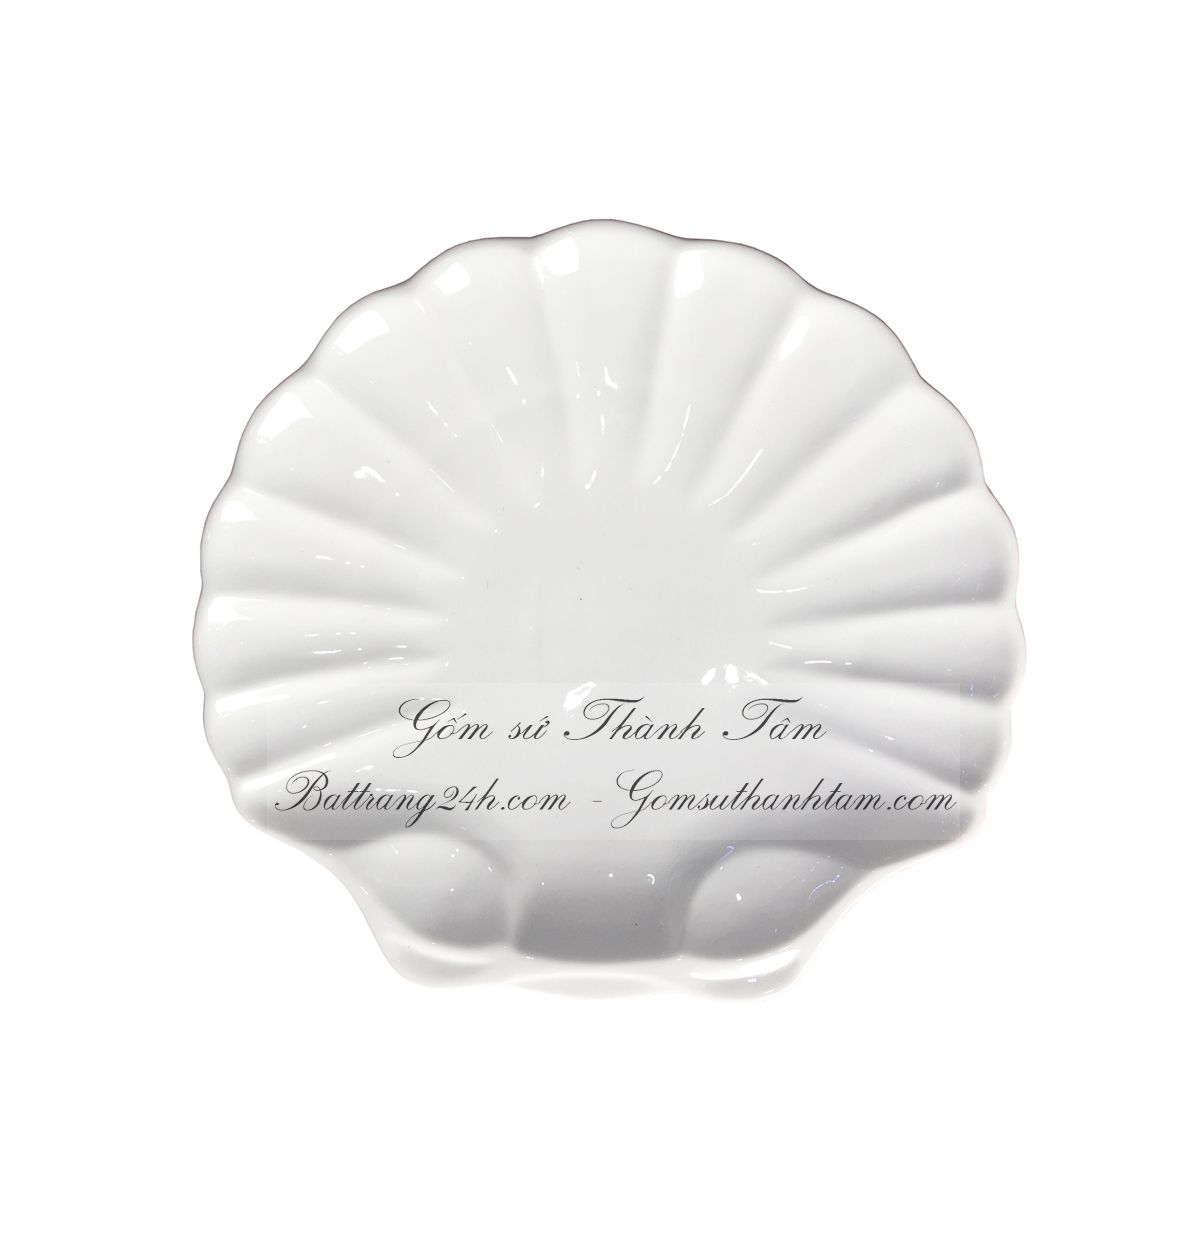 Bộ bát đĩa gốm sứ Bát Tràng đẹp nhà hàng coa cấp men trắng tinh, bộ bát đĩa sứ chất lượng giá rẻ